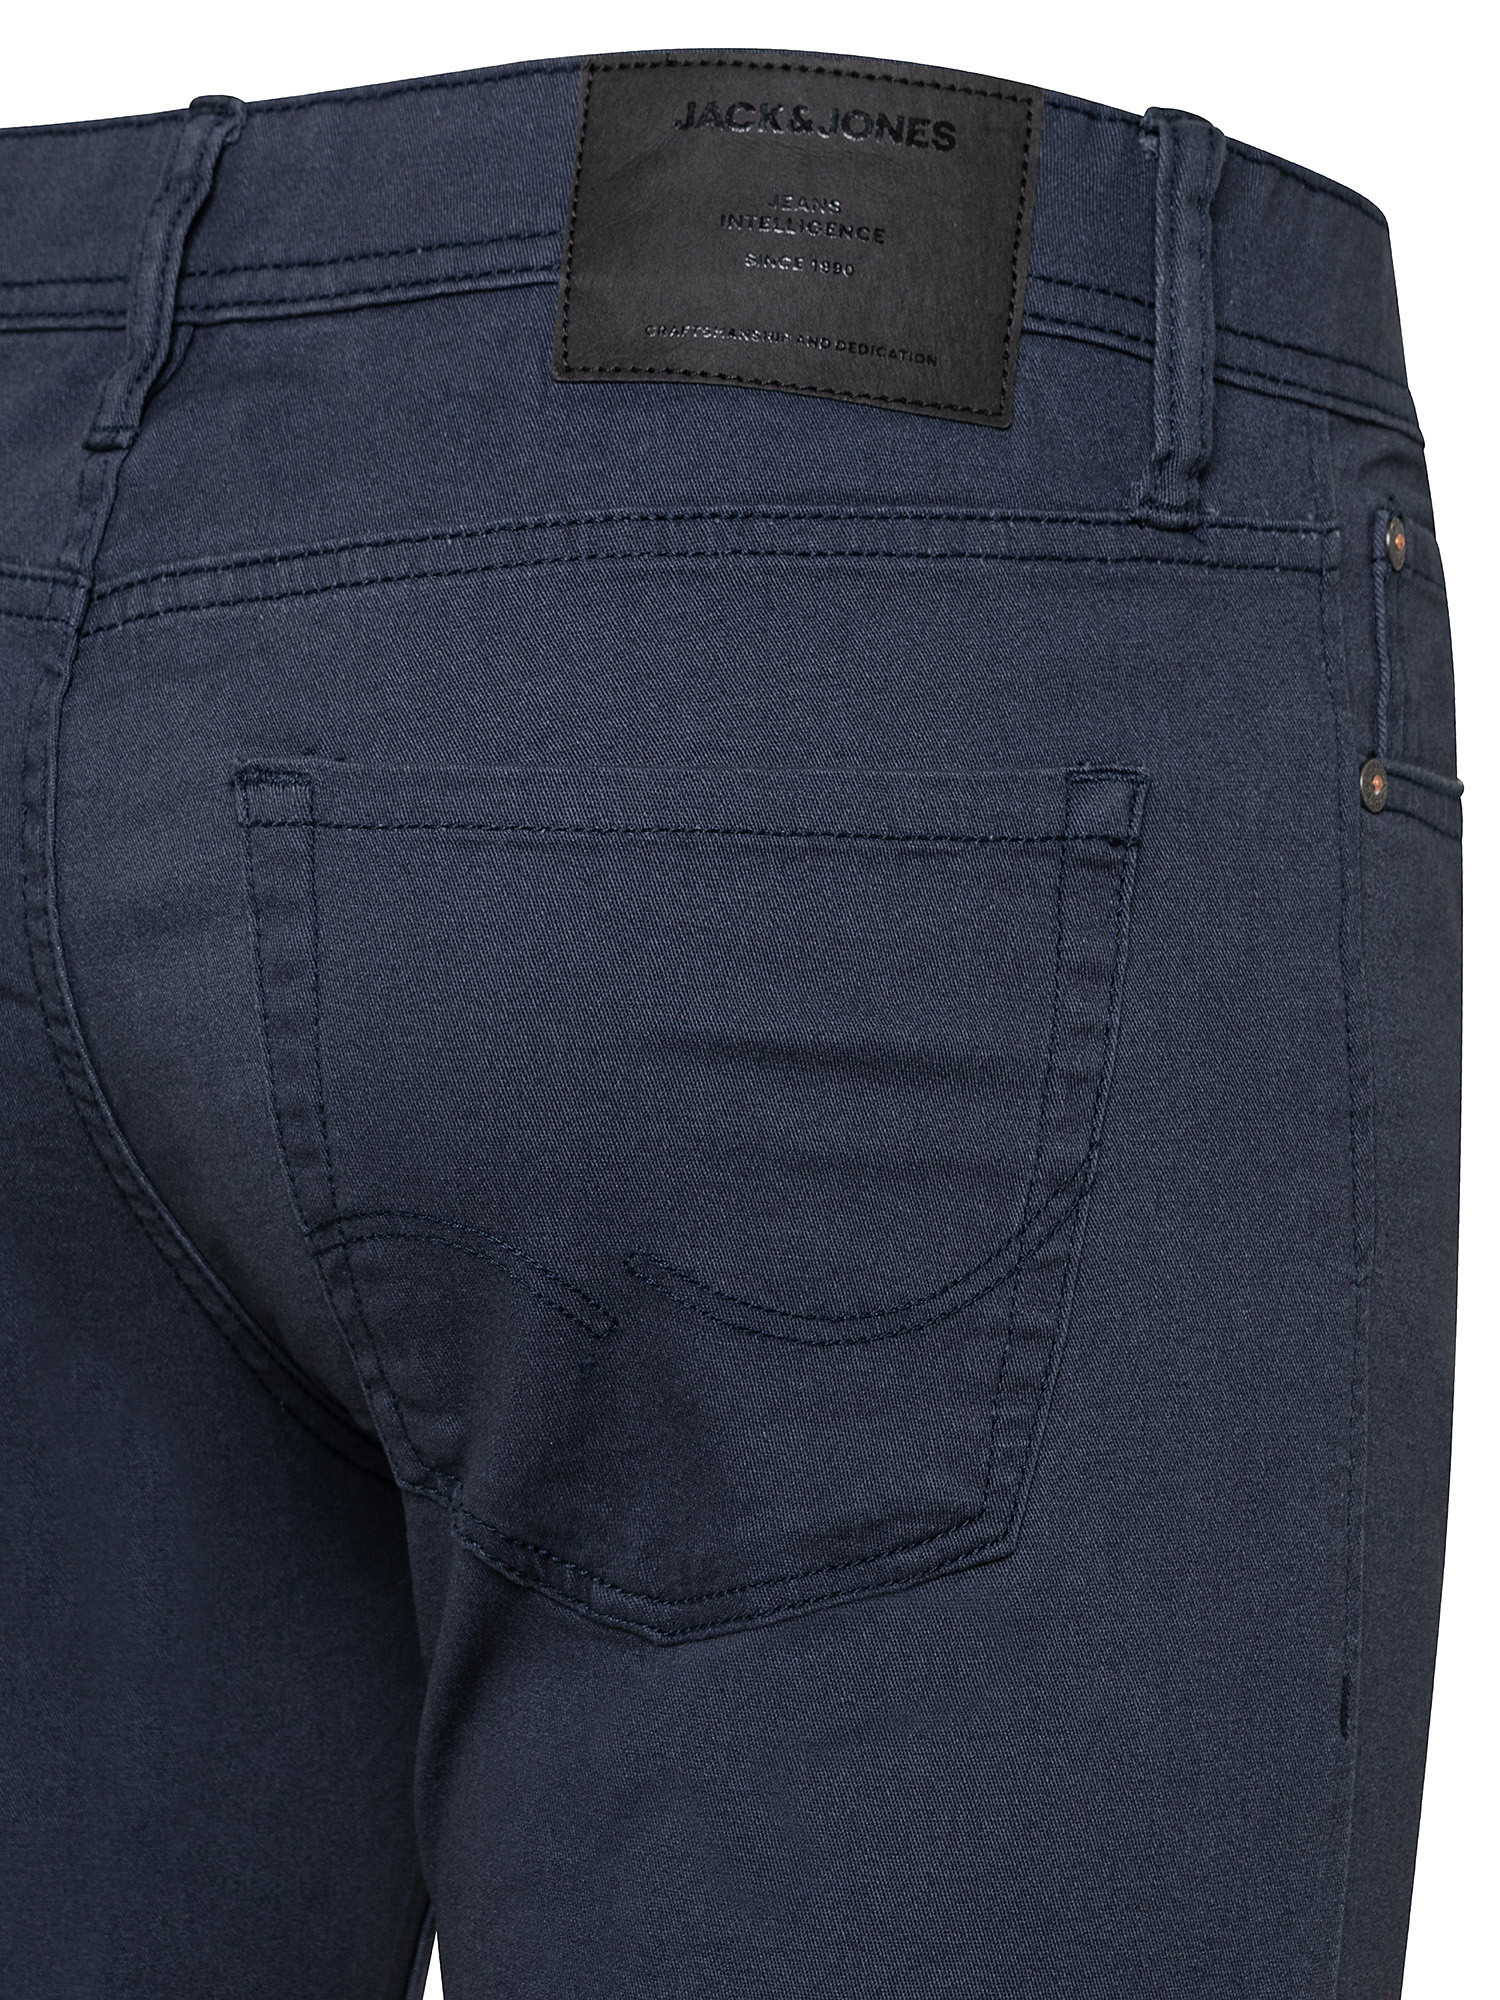 Pantalone, Blu scuro, large image number 2